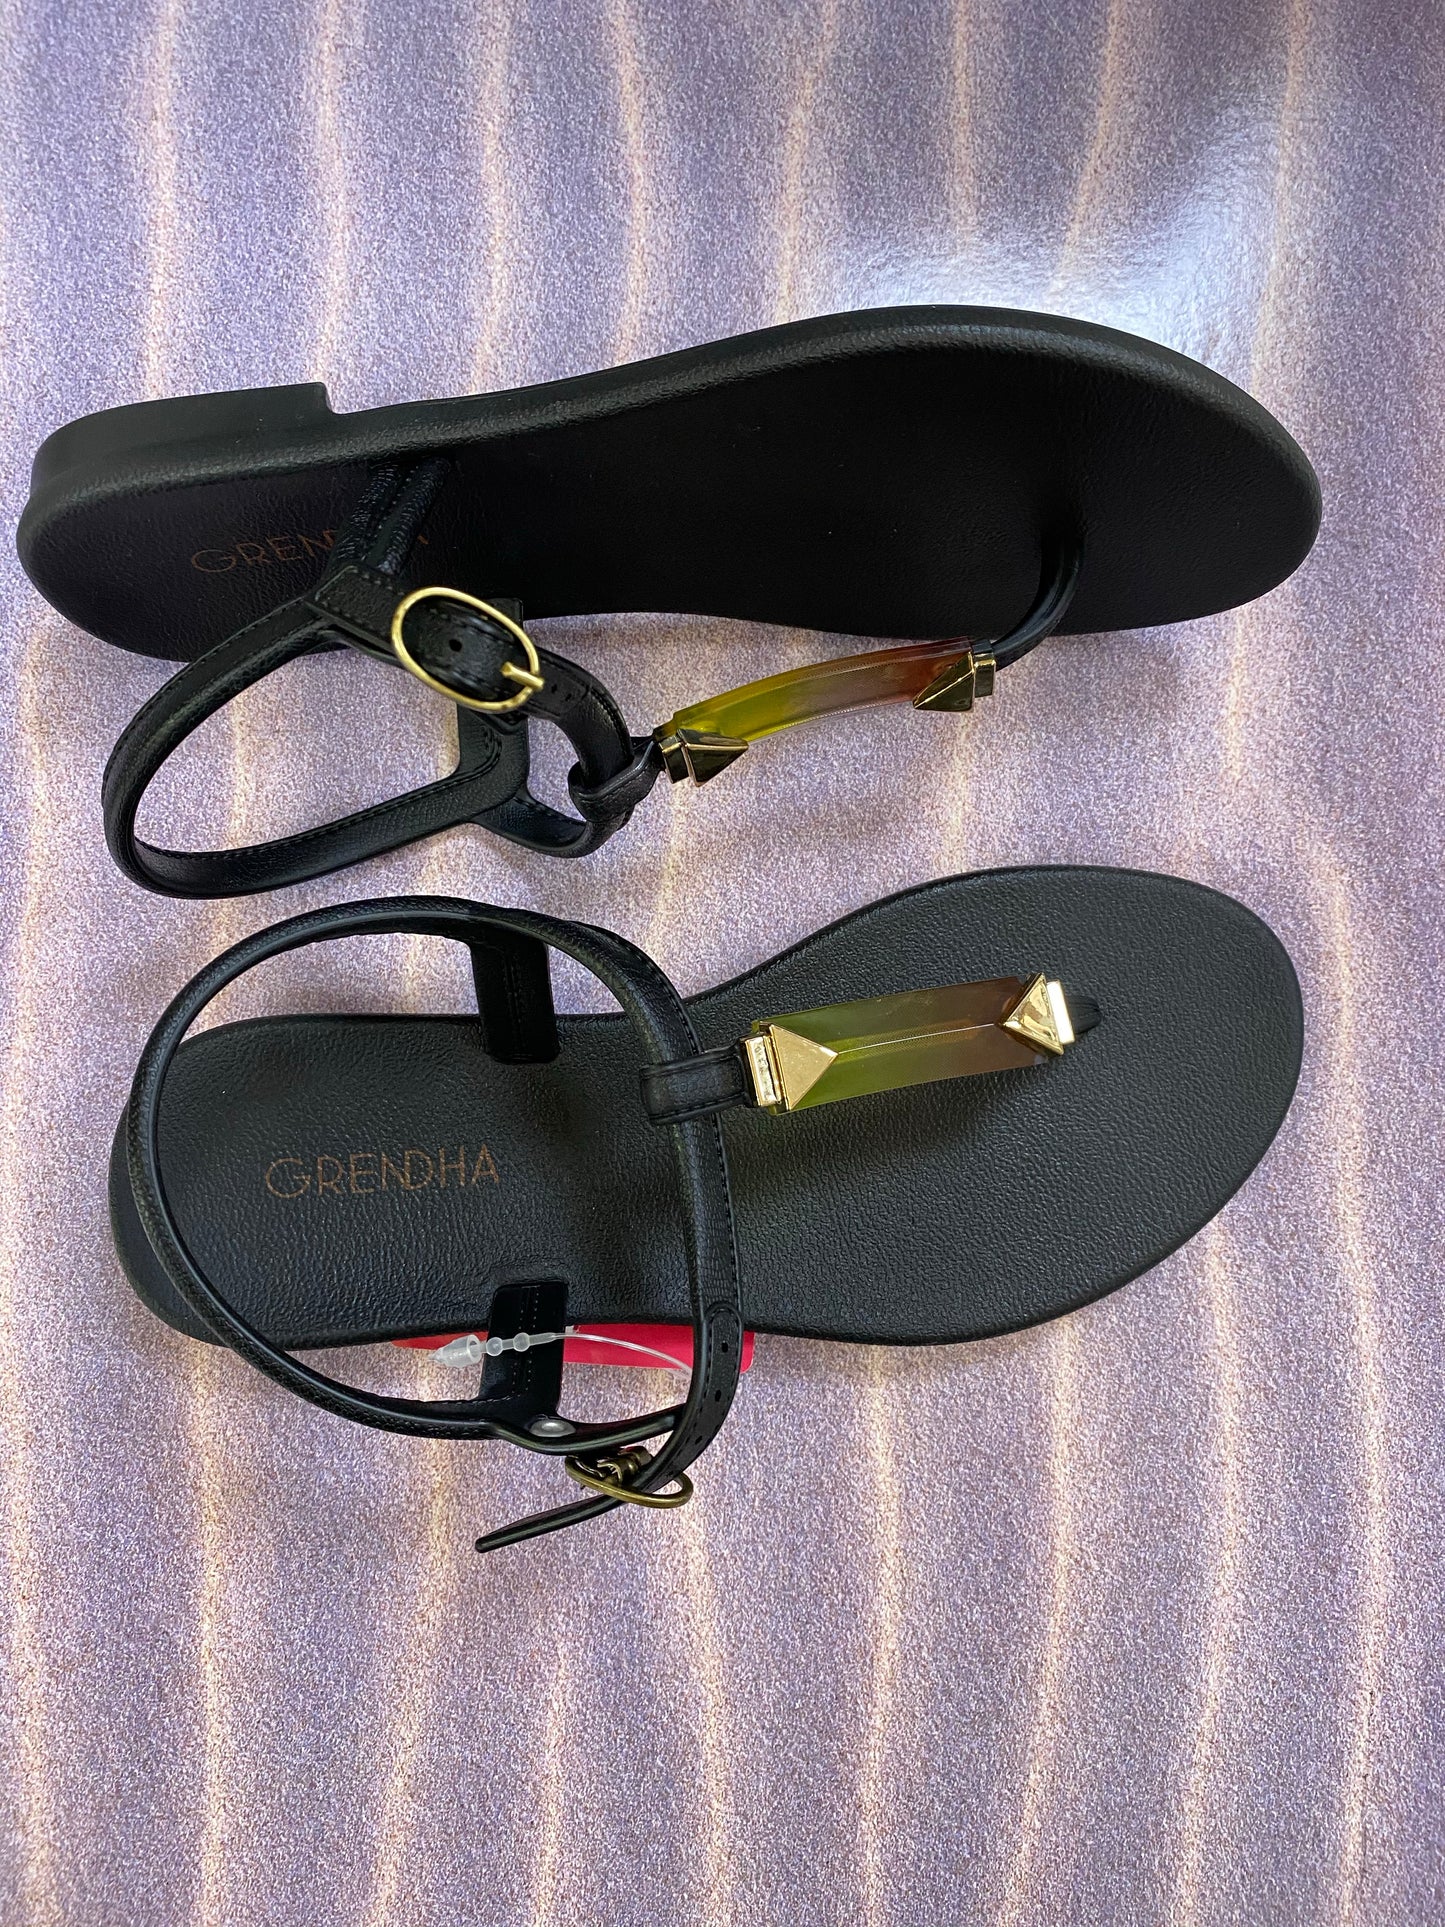 Ipanema crystal sandal black